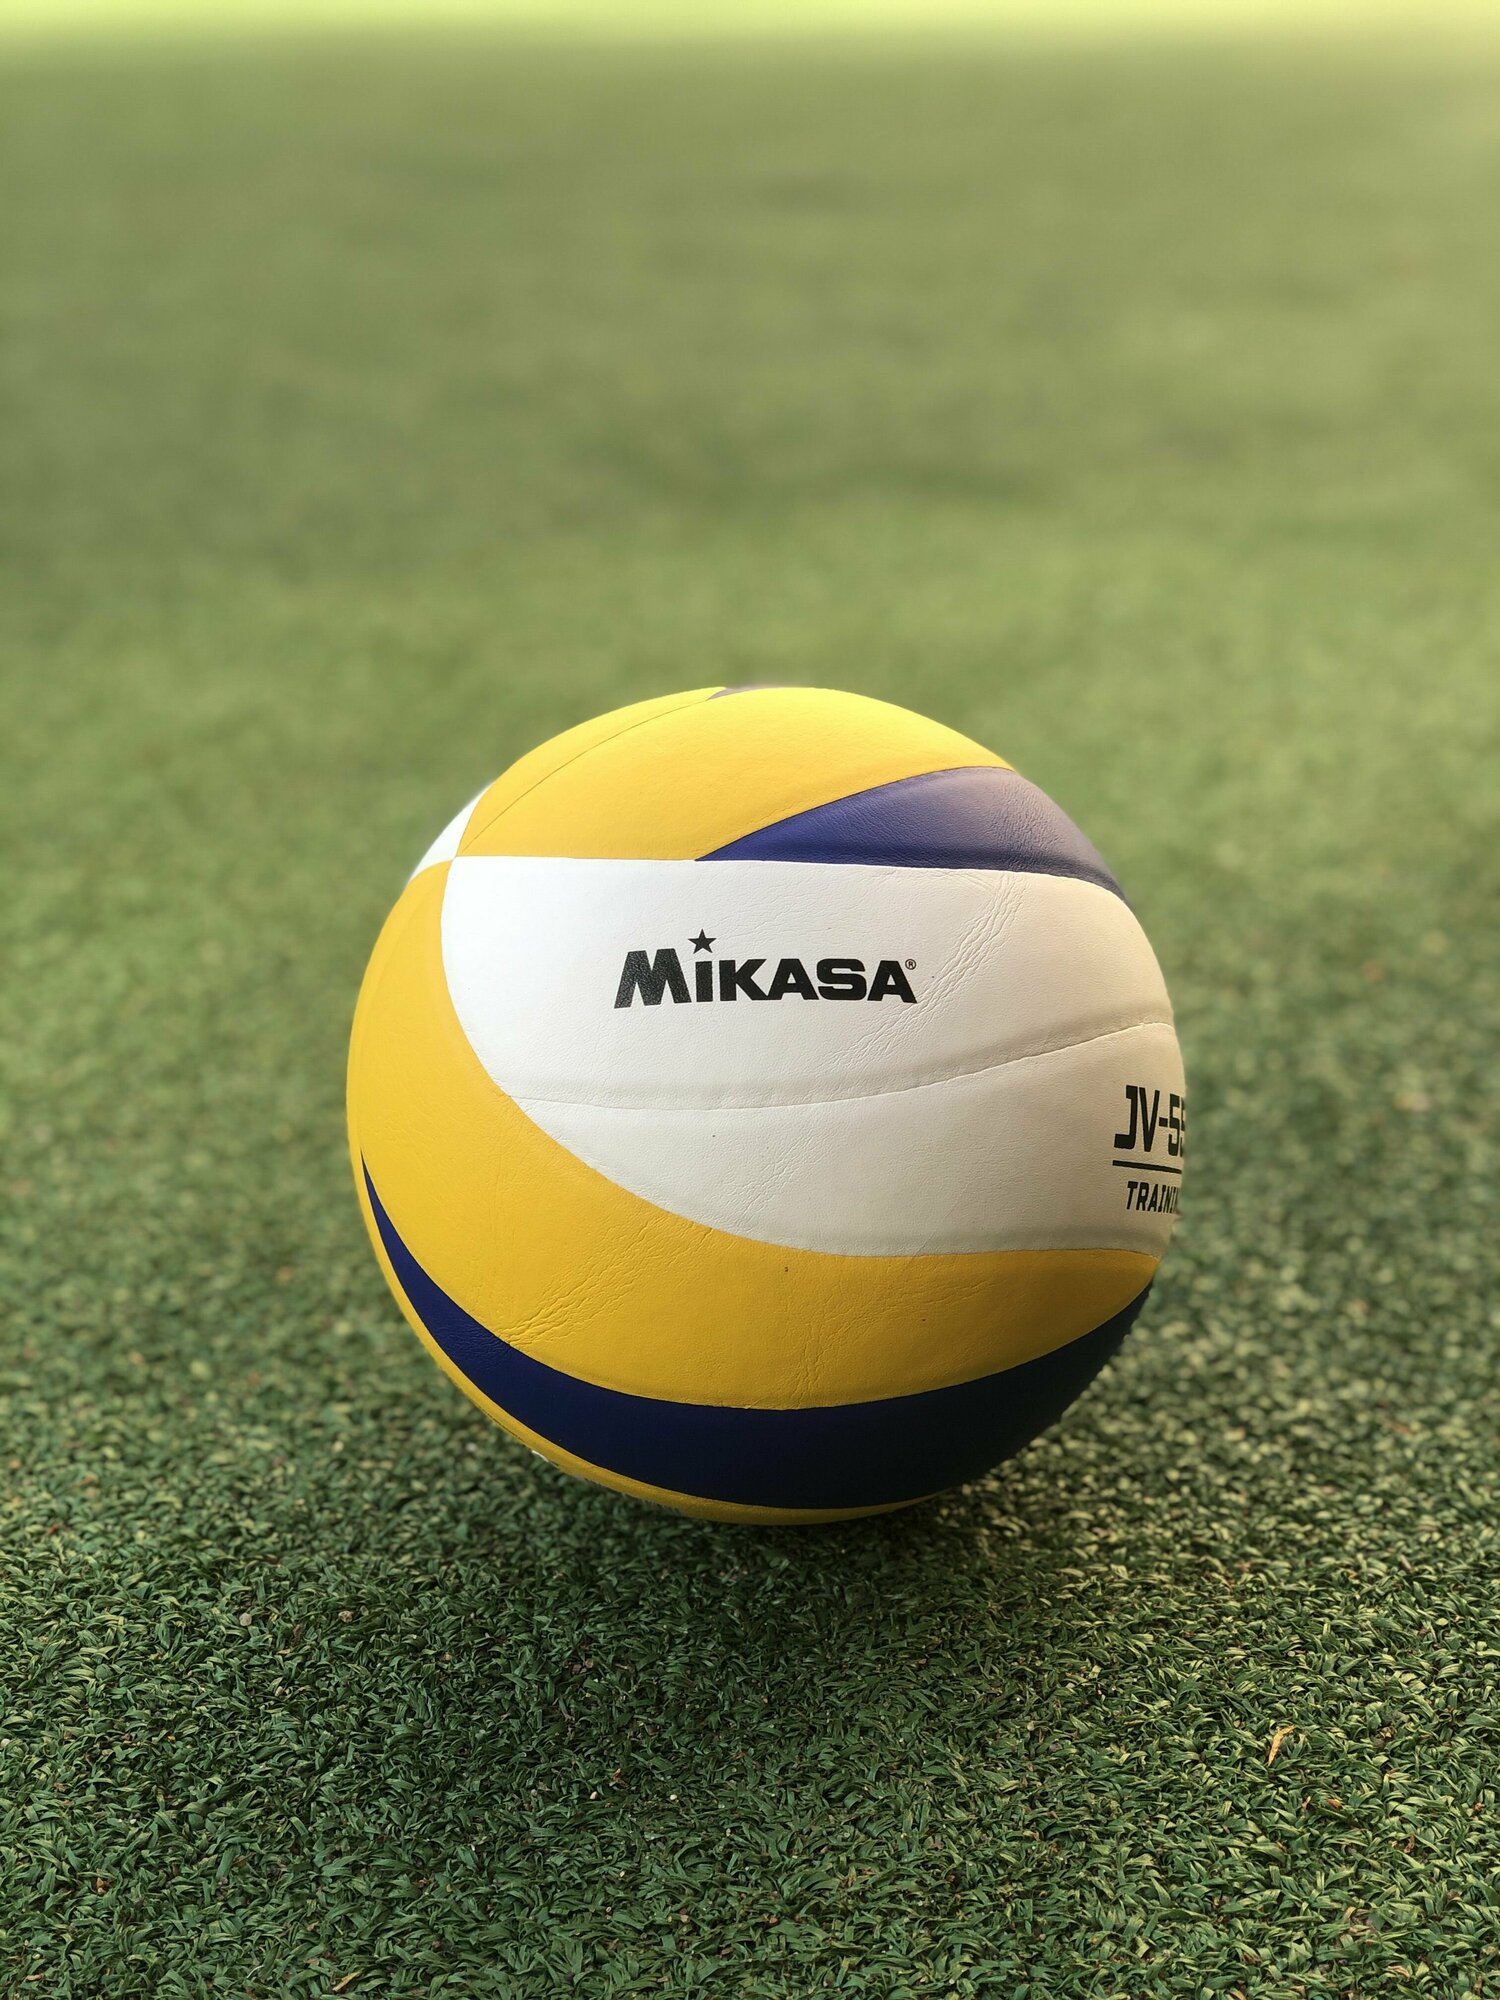 Мяч волейбольный Mikasa JV-550, размер 5, профессиональный с насосом, для тренировок